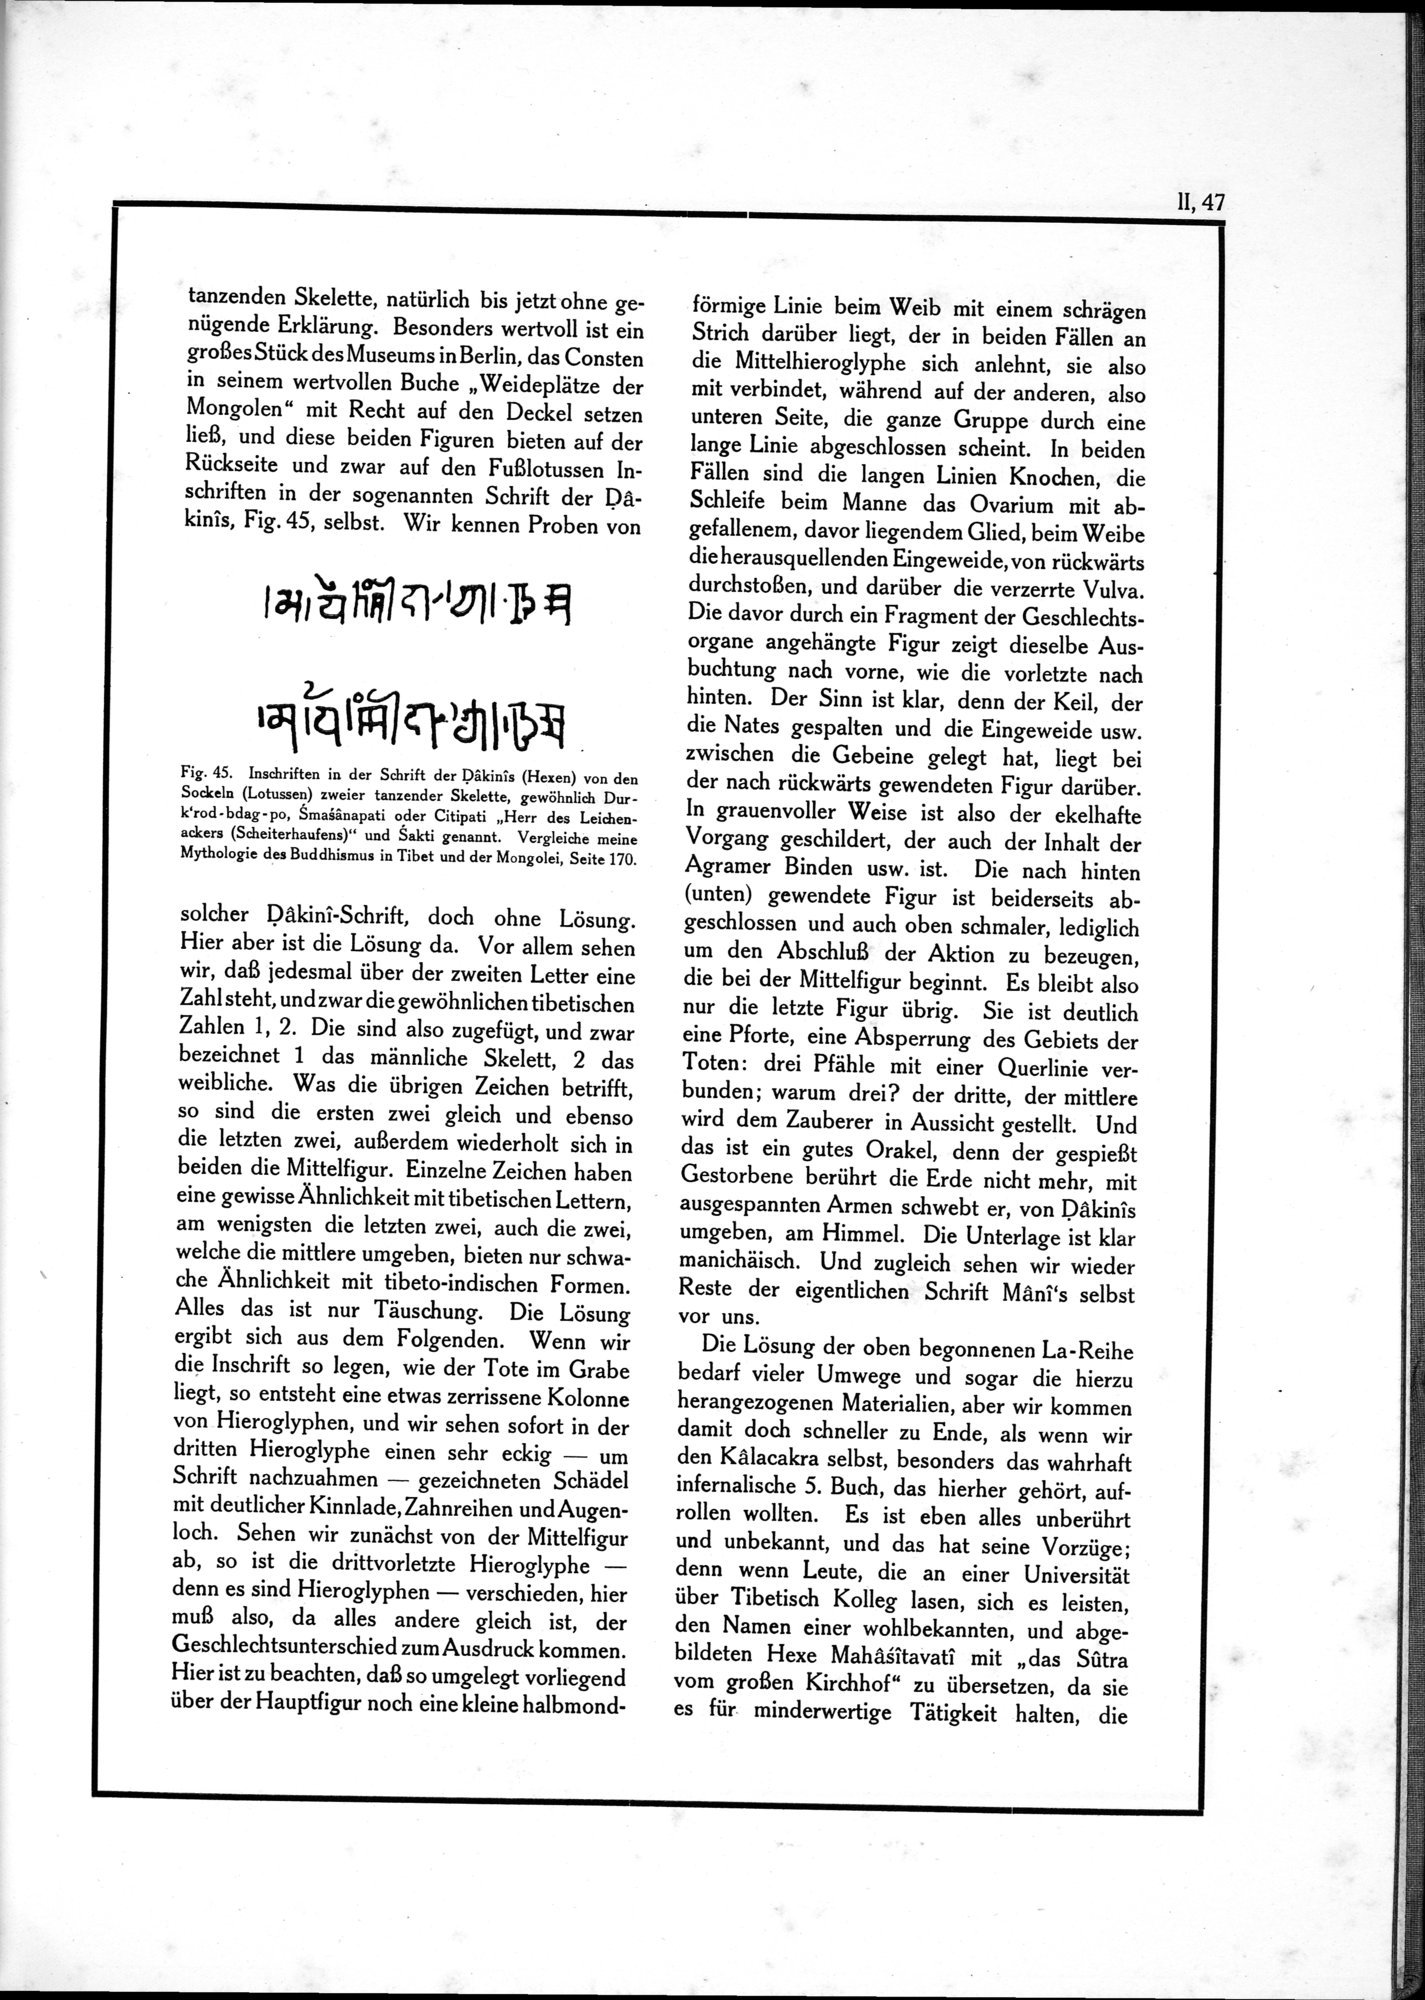 Die Teufel des Avesta und Ihre Beziehungen zur Ikonographie des Buddhismus Zentral-Asiens : vol.1 / Page 503 (Grayscale High Resolution Image)